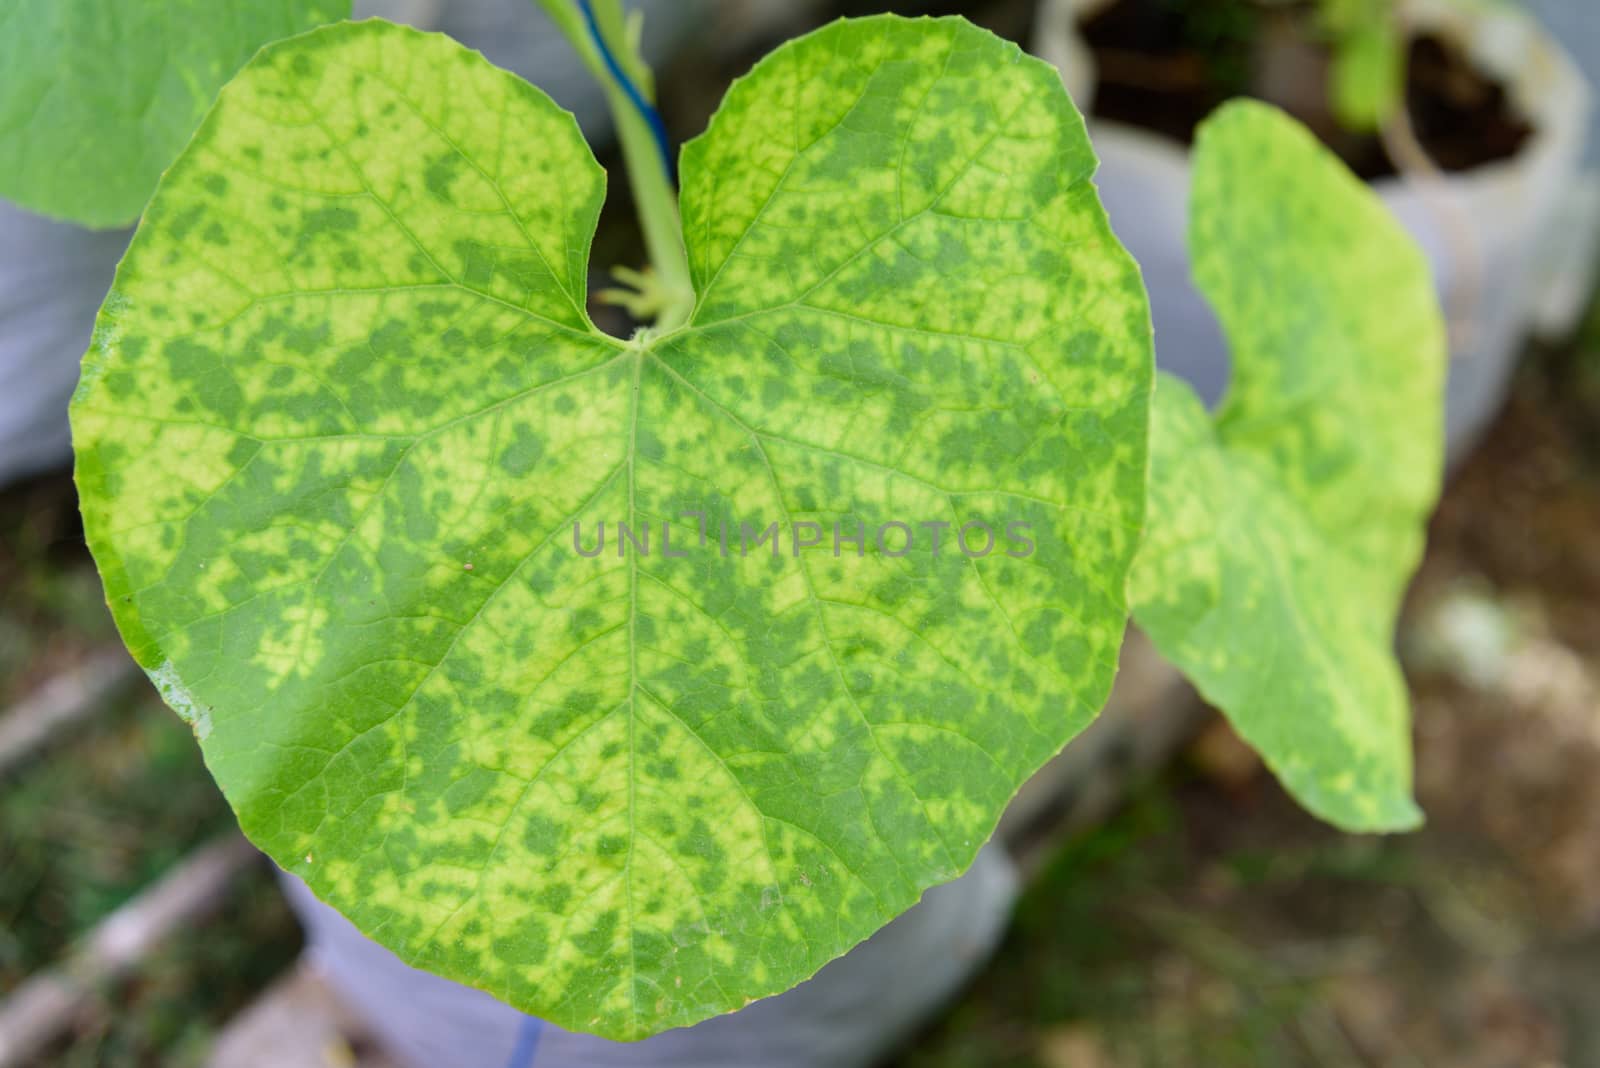 melon leaf has Lack of nutrition symptom by rukawajung